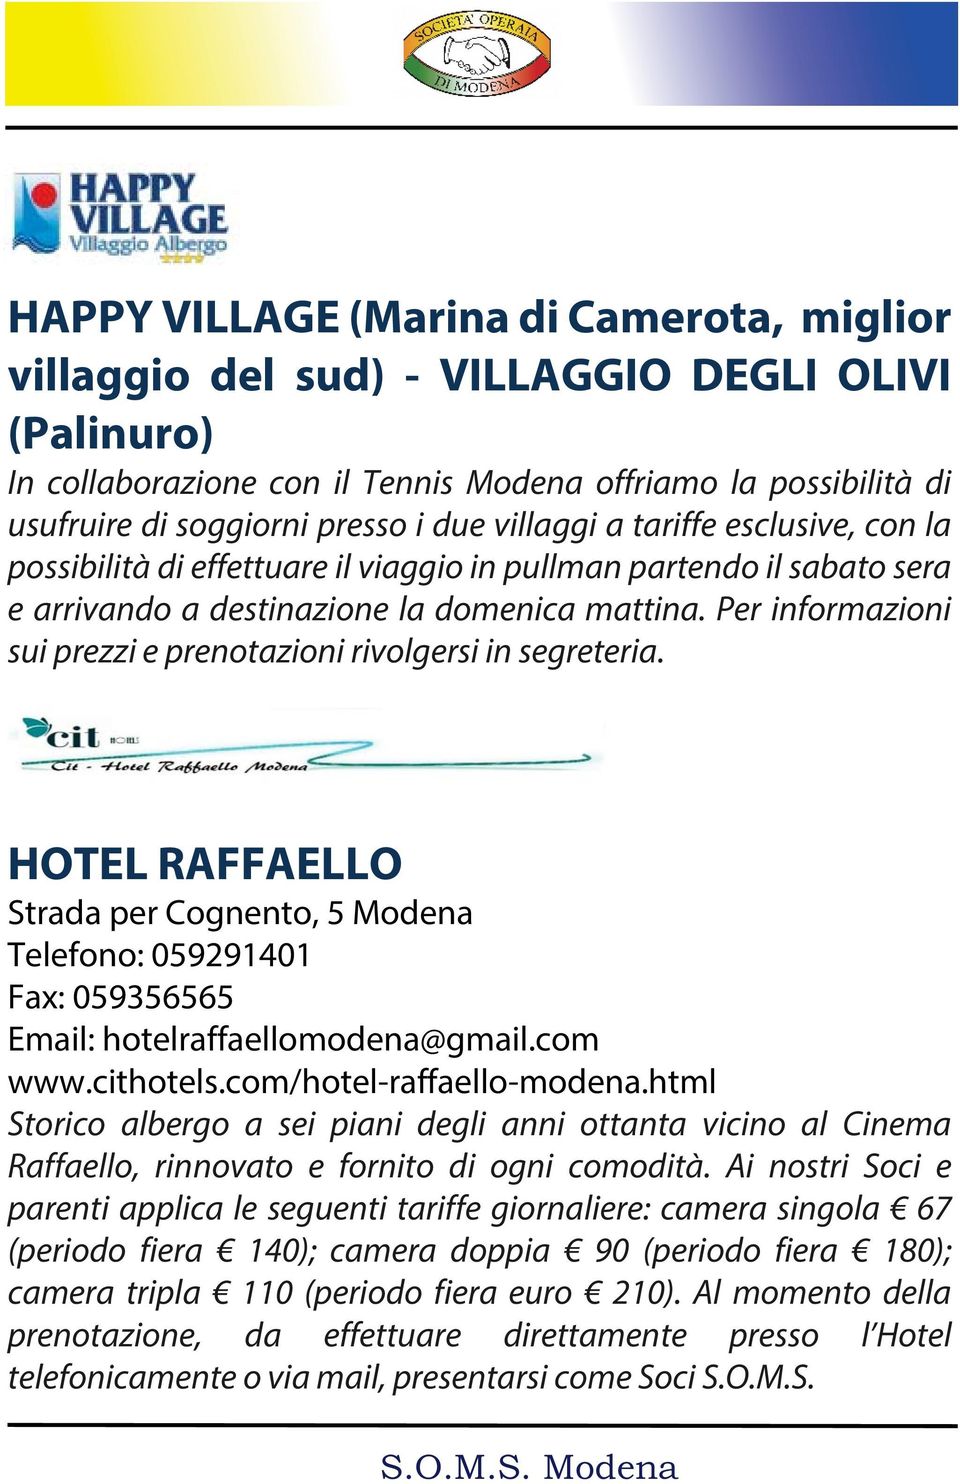 Per informazioni sui prezzi e prenotazioni rivolgersi in segreteria. HOTEL RAFFAELLO Strada per Cognento, 5 Modena Telefono: 059291401 Fax: 059356565 Email: hotelraffaellomodena@gmail.com www.